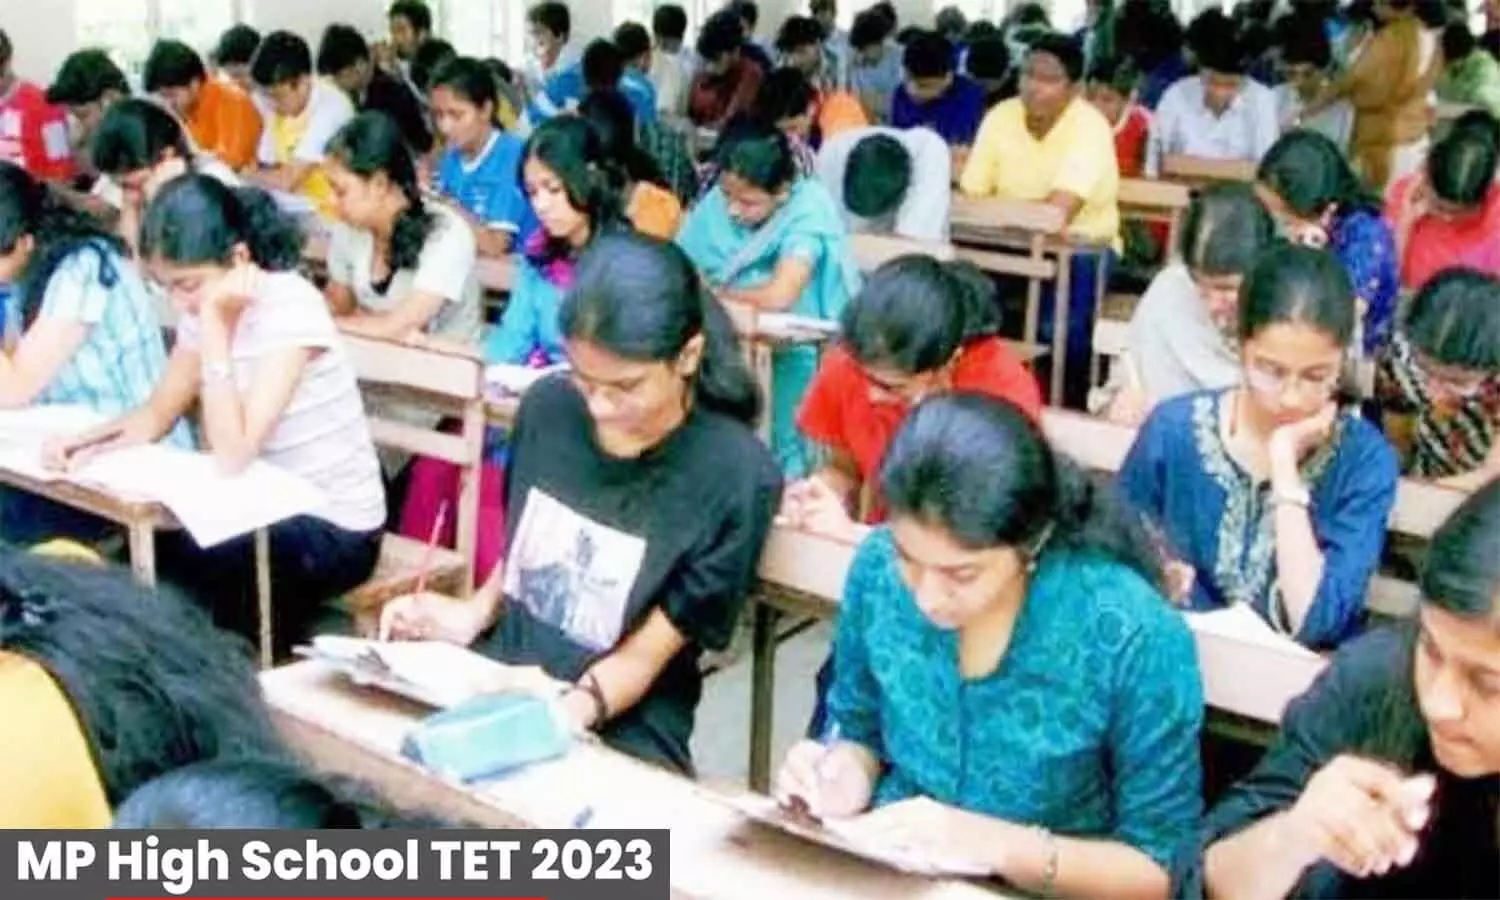 MP HSTET 2023: एमपी हाईस्कूल शिक्षक पात्रता परीक्षा के लिए नोटिफिकेशन जारी, किन विषयों के लिए कितने पद भरे जाने हैं फटाफट चेक करें